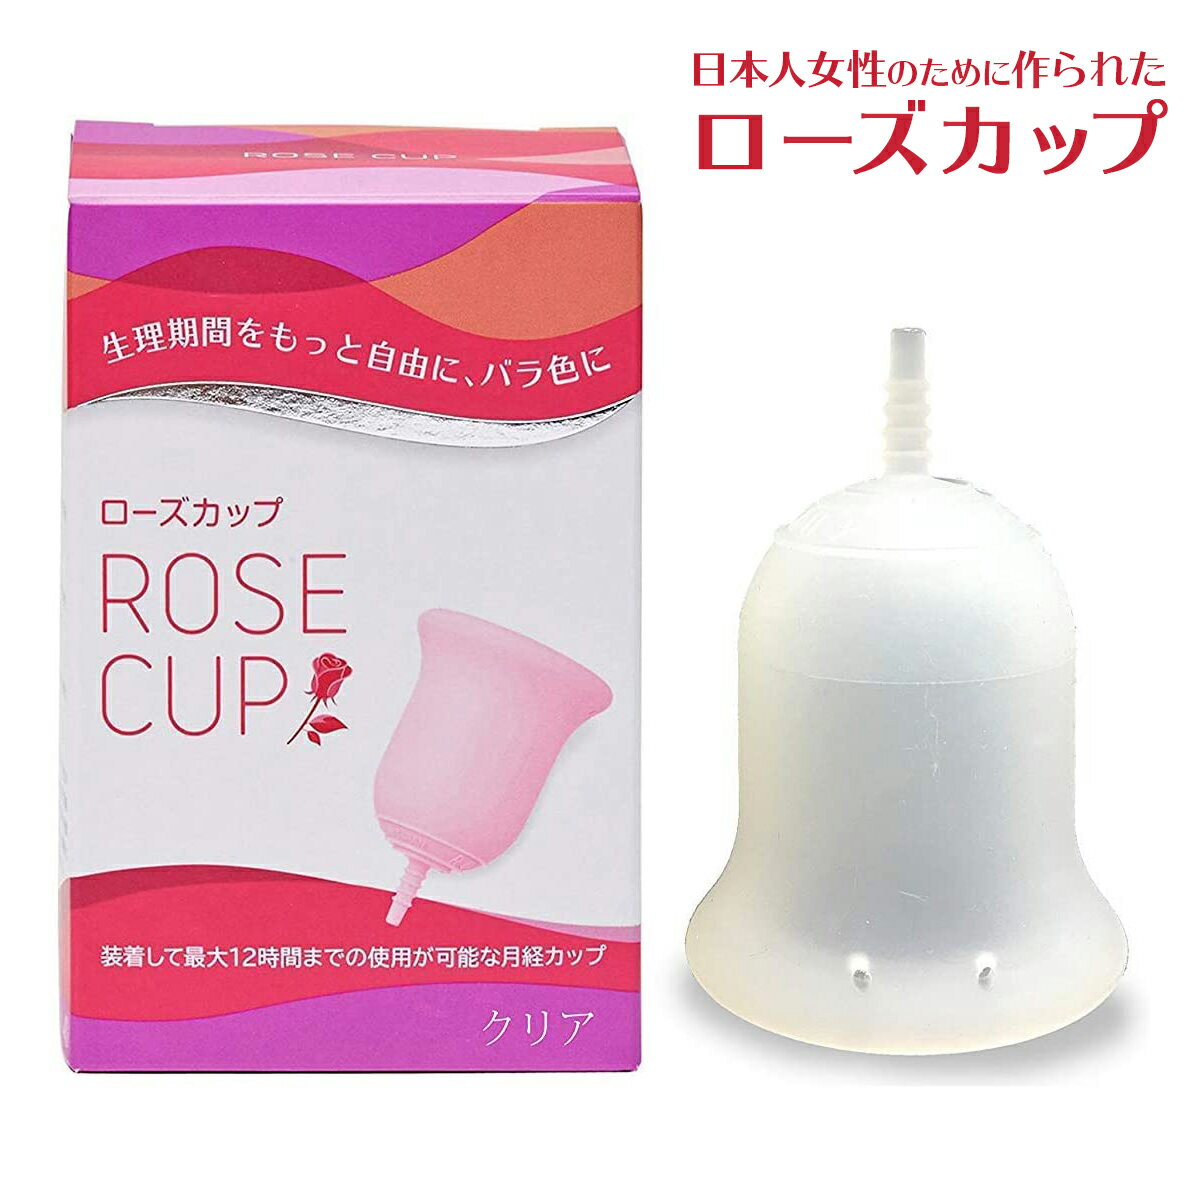 ローズカップ クリア 月経カップ 日本製 生理 生理カップ 経血カップ